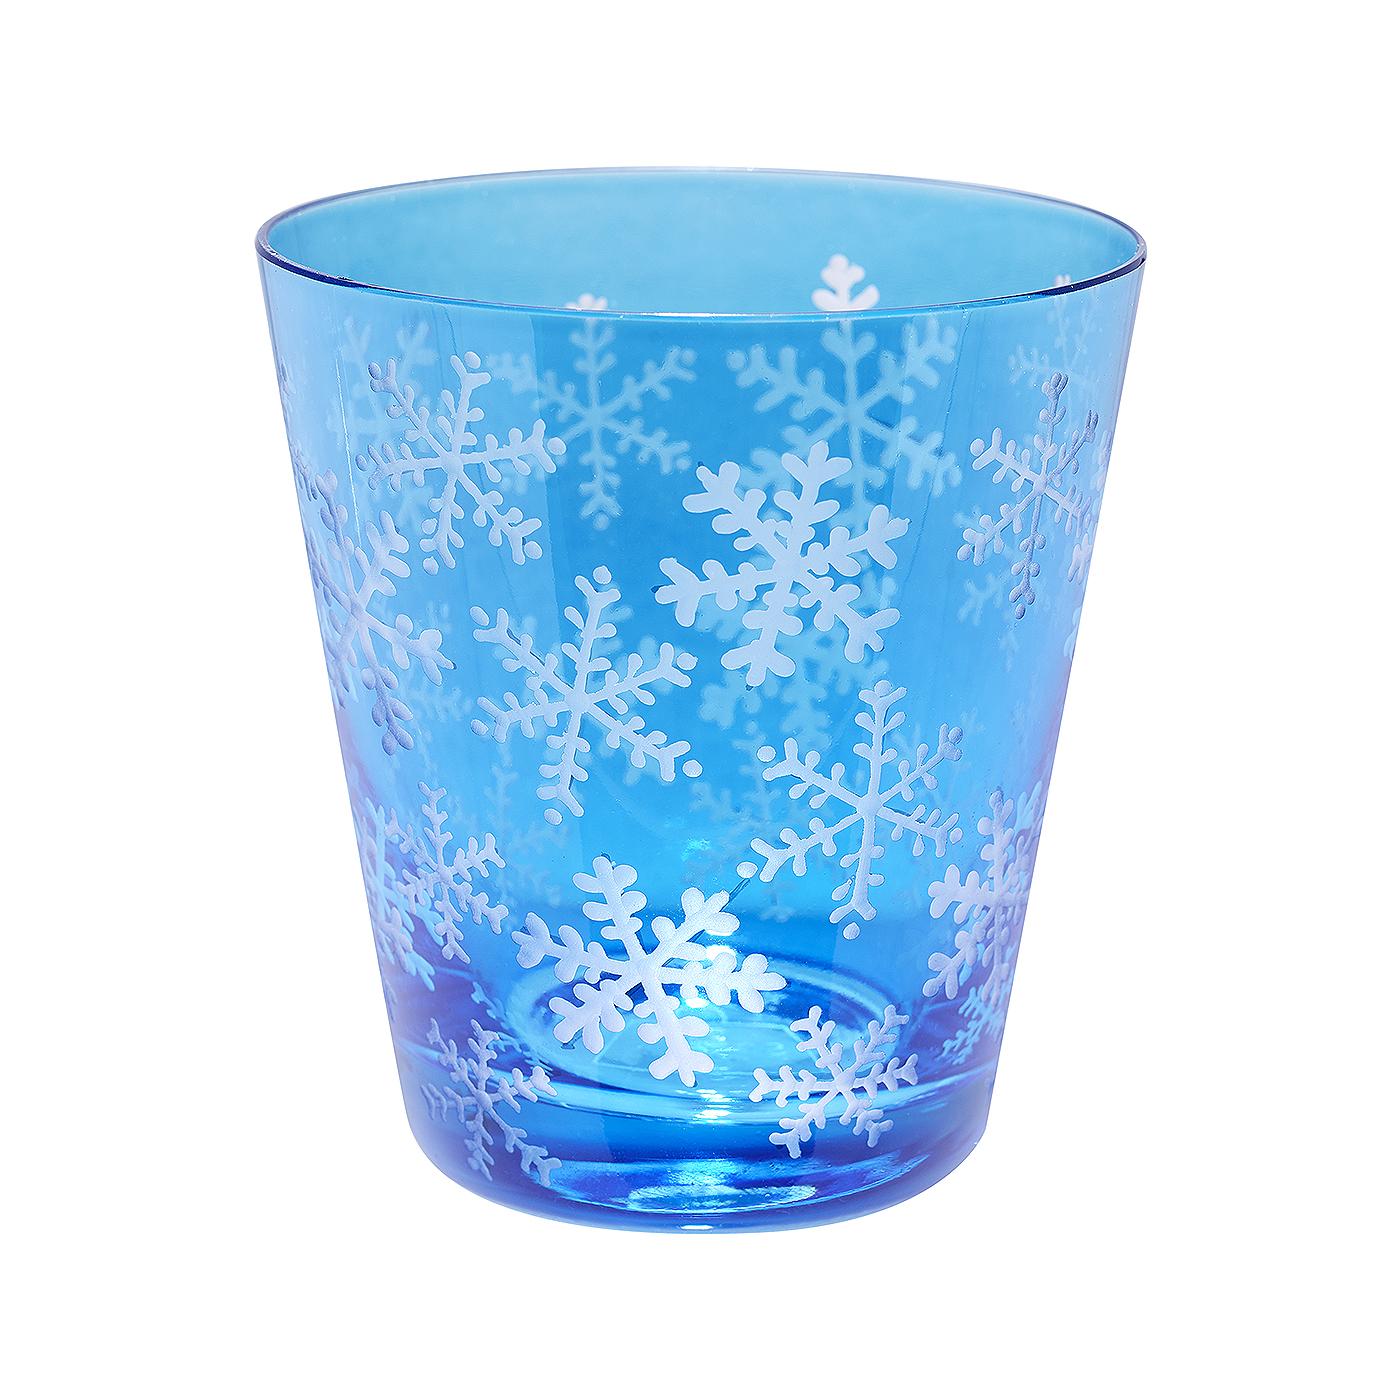 Ensemble de six gobelets en cristal bleu soufflé à la main dans un style rustique.... Les verres sont gravés à la main avec un décor hivernal de flocons de neige tout autour. Les verres sont signés par Sofina dans le bas. Entièrement fabriqué à la